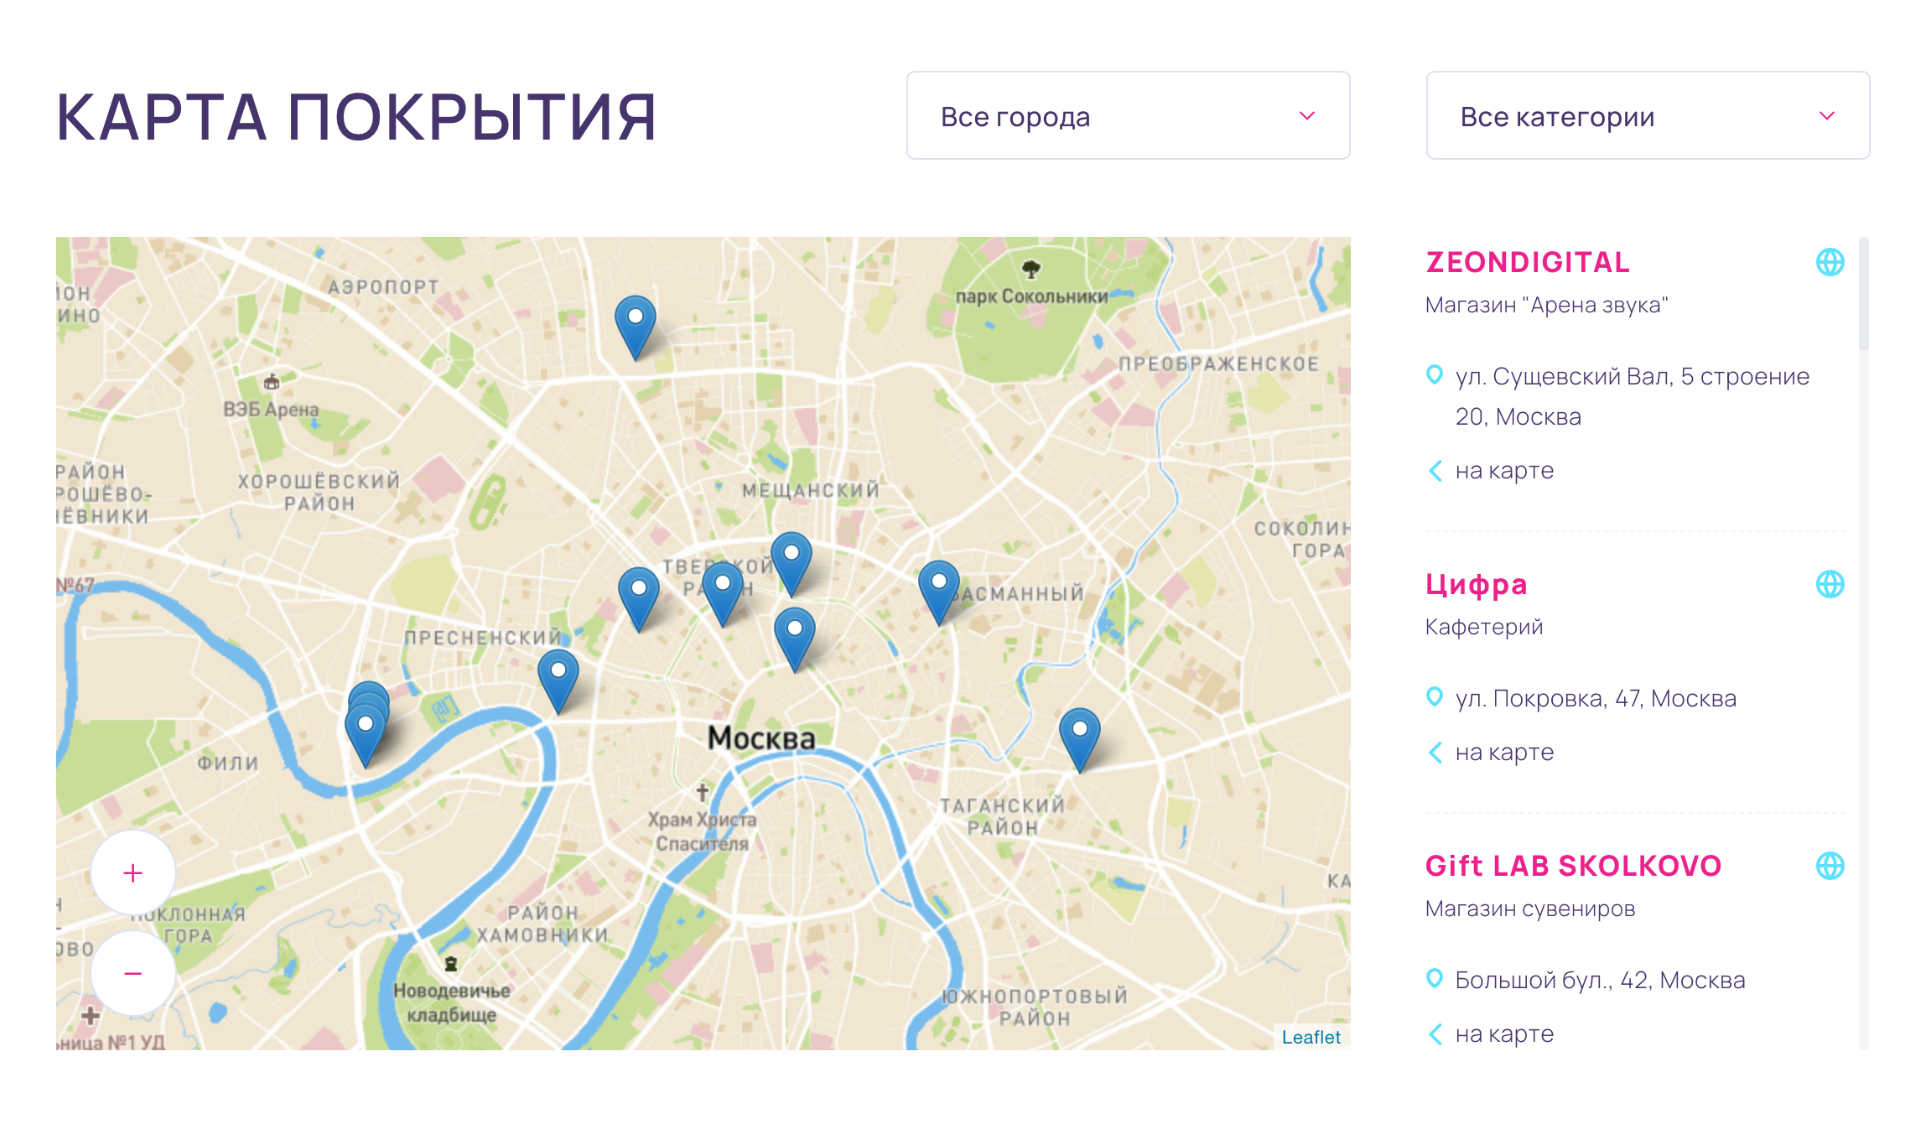 На карте Москвы у «Дабл-профита» отмечены 10 магазинов⁠-⁠партнеров. Я нашел их контакты в интернете и позвонил менеджерам. Они в первый раз услышали о том, что с кем⁠-⁠то сотрудничают